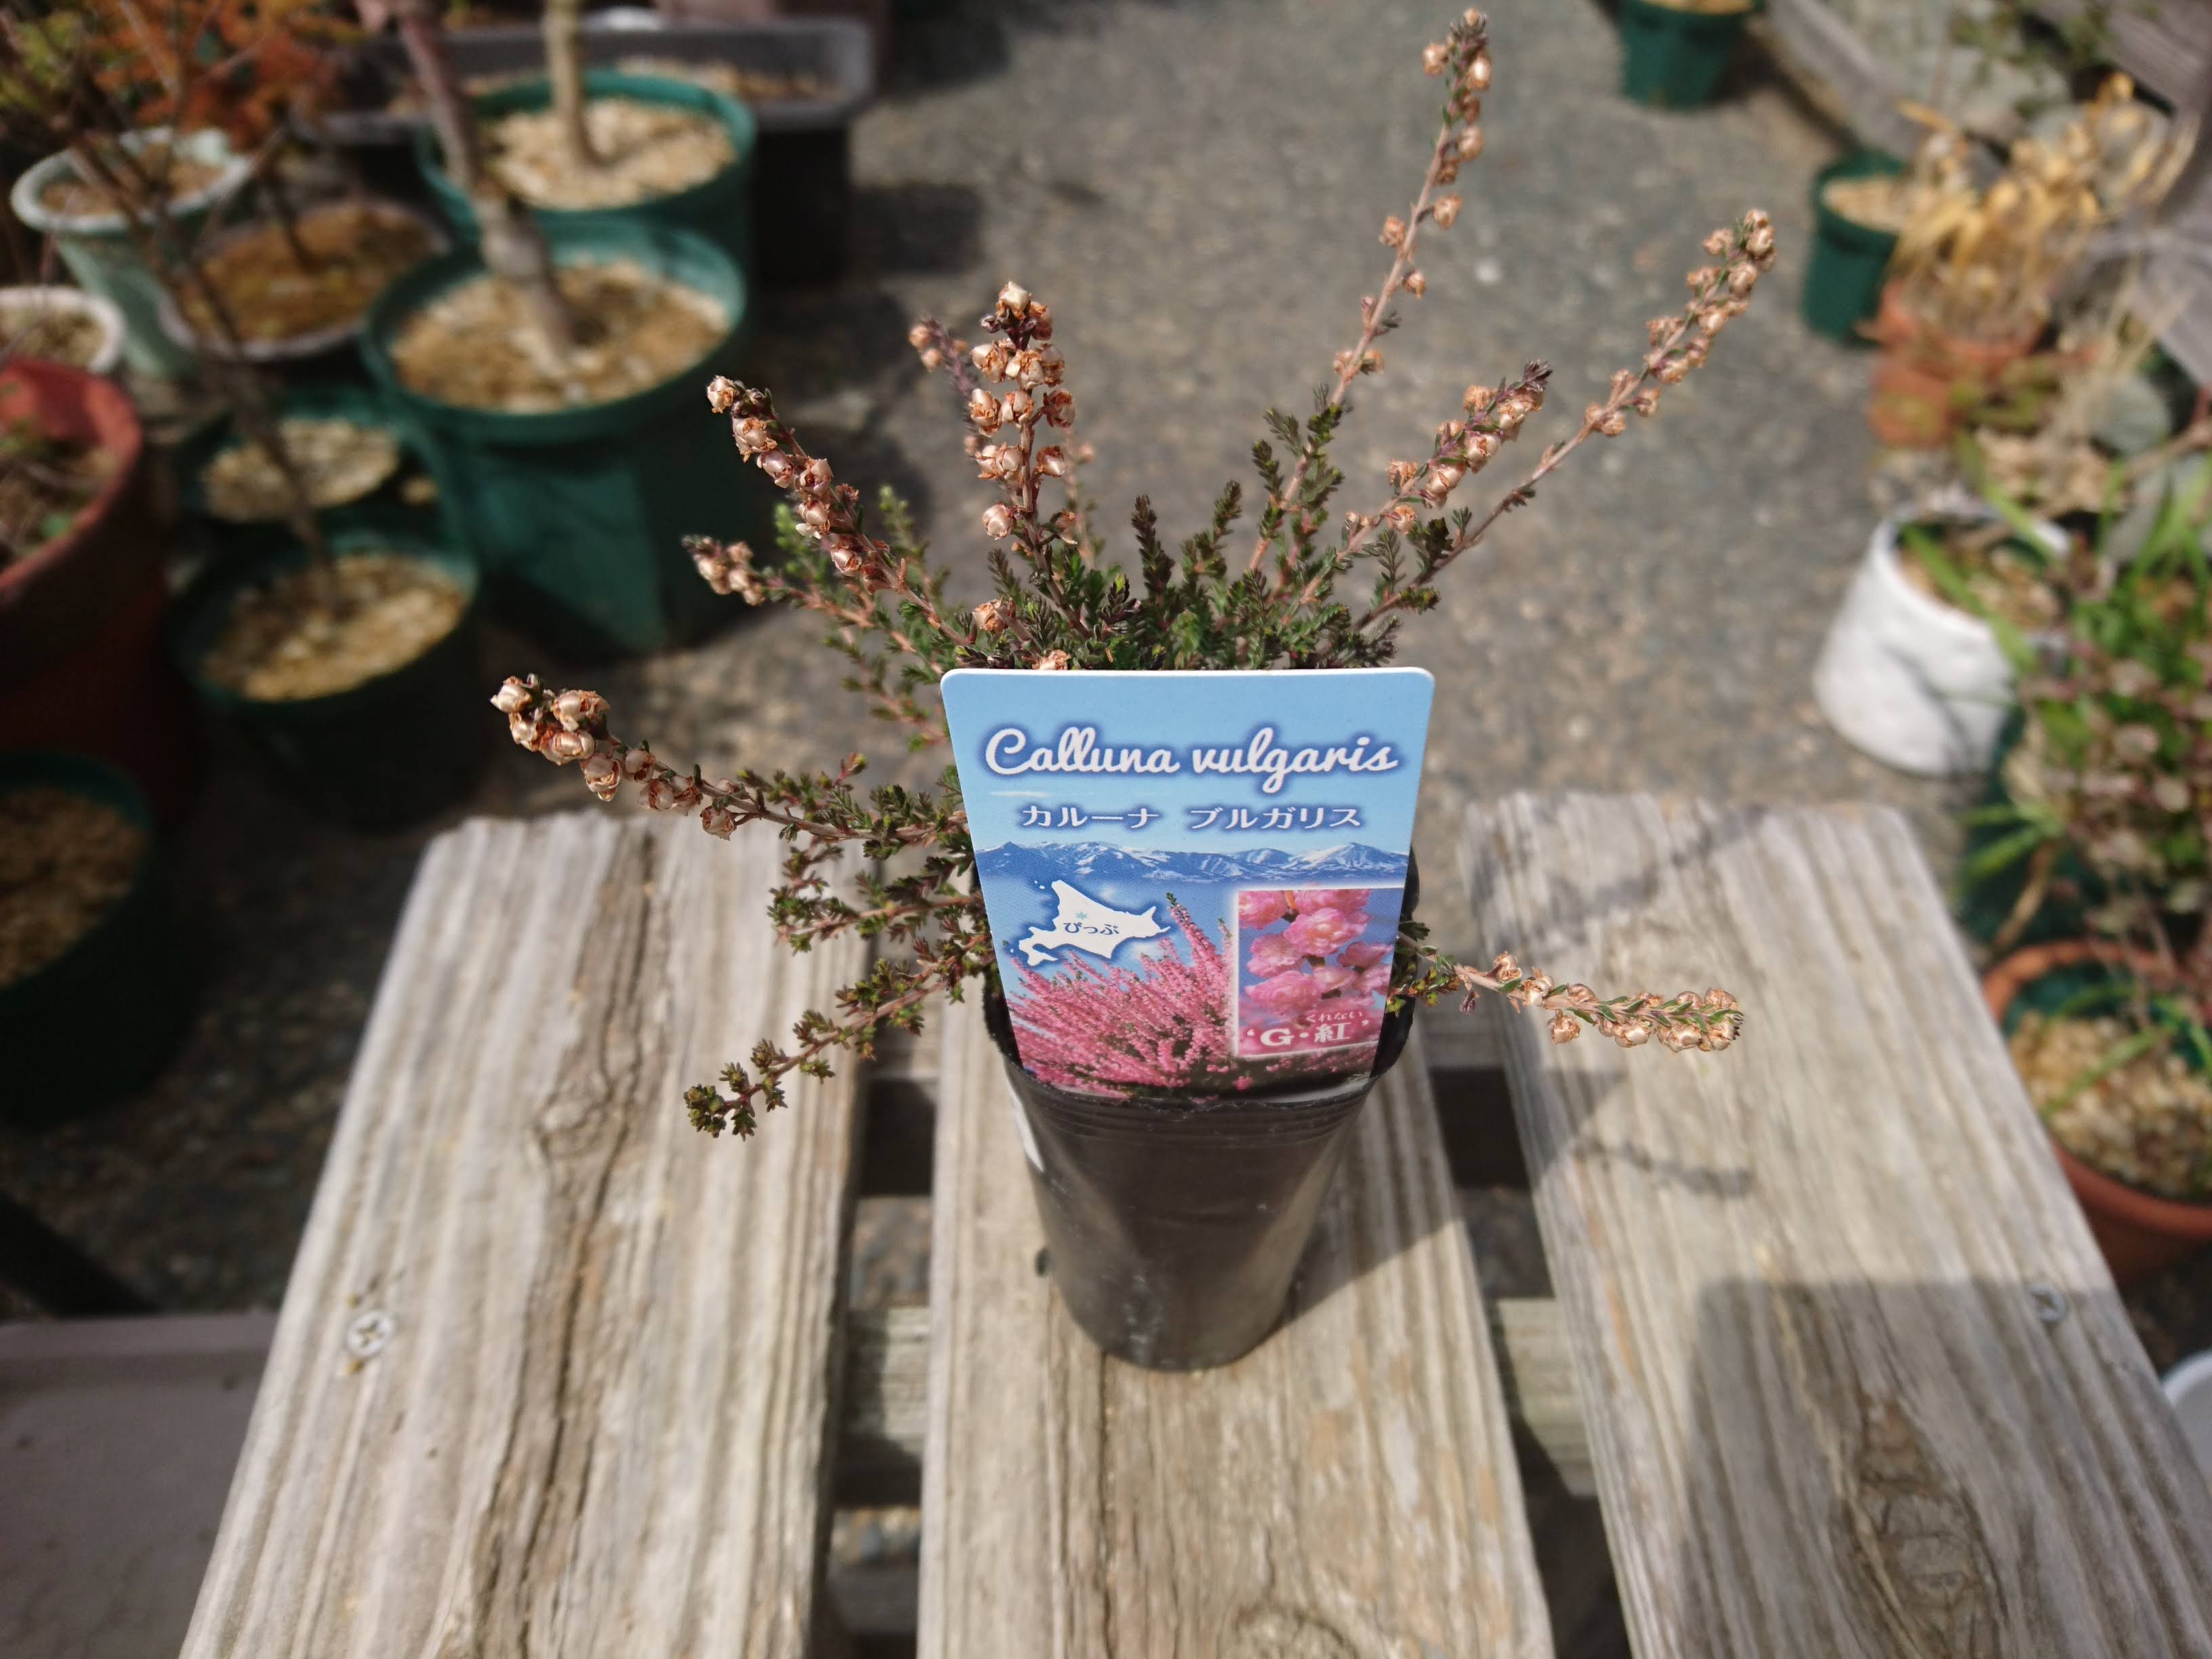 カルーナ ブルガリスの育て方 小さな鉢植えで 夏に美しい花を楽しむ メダカの大工